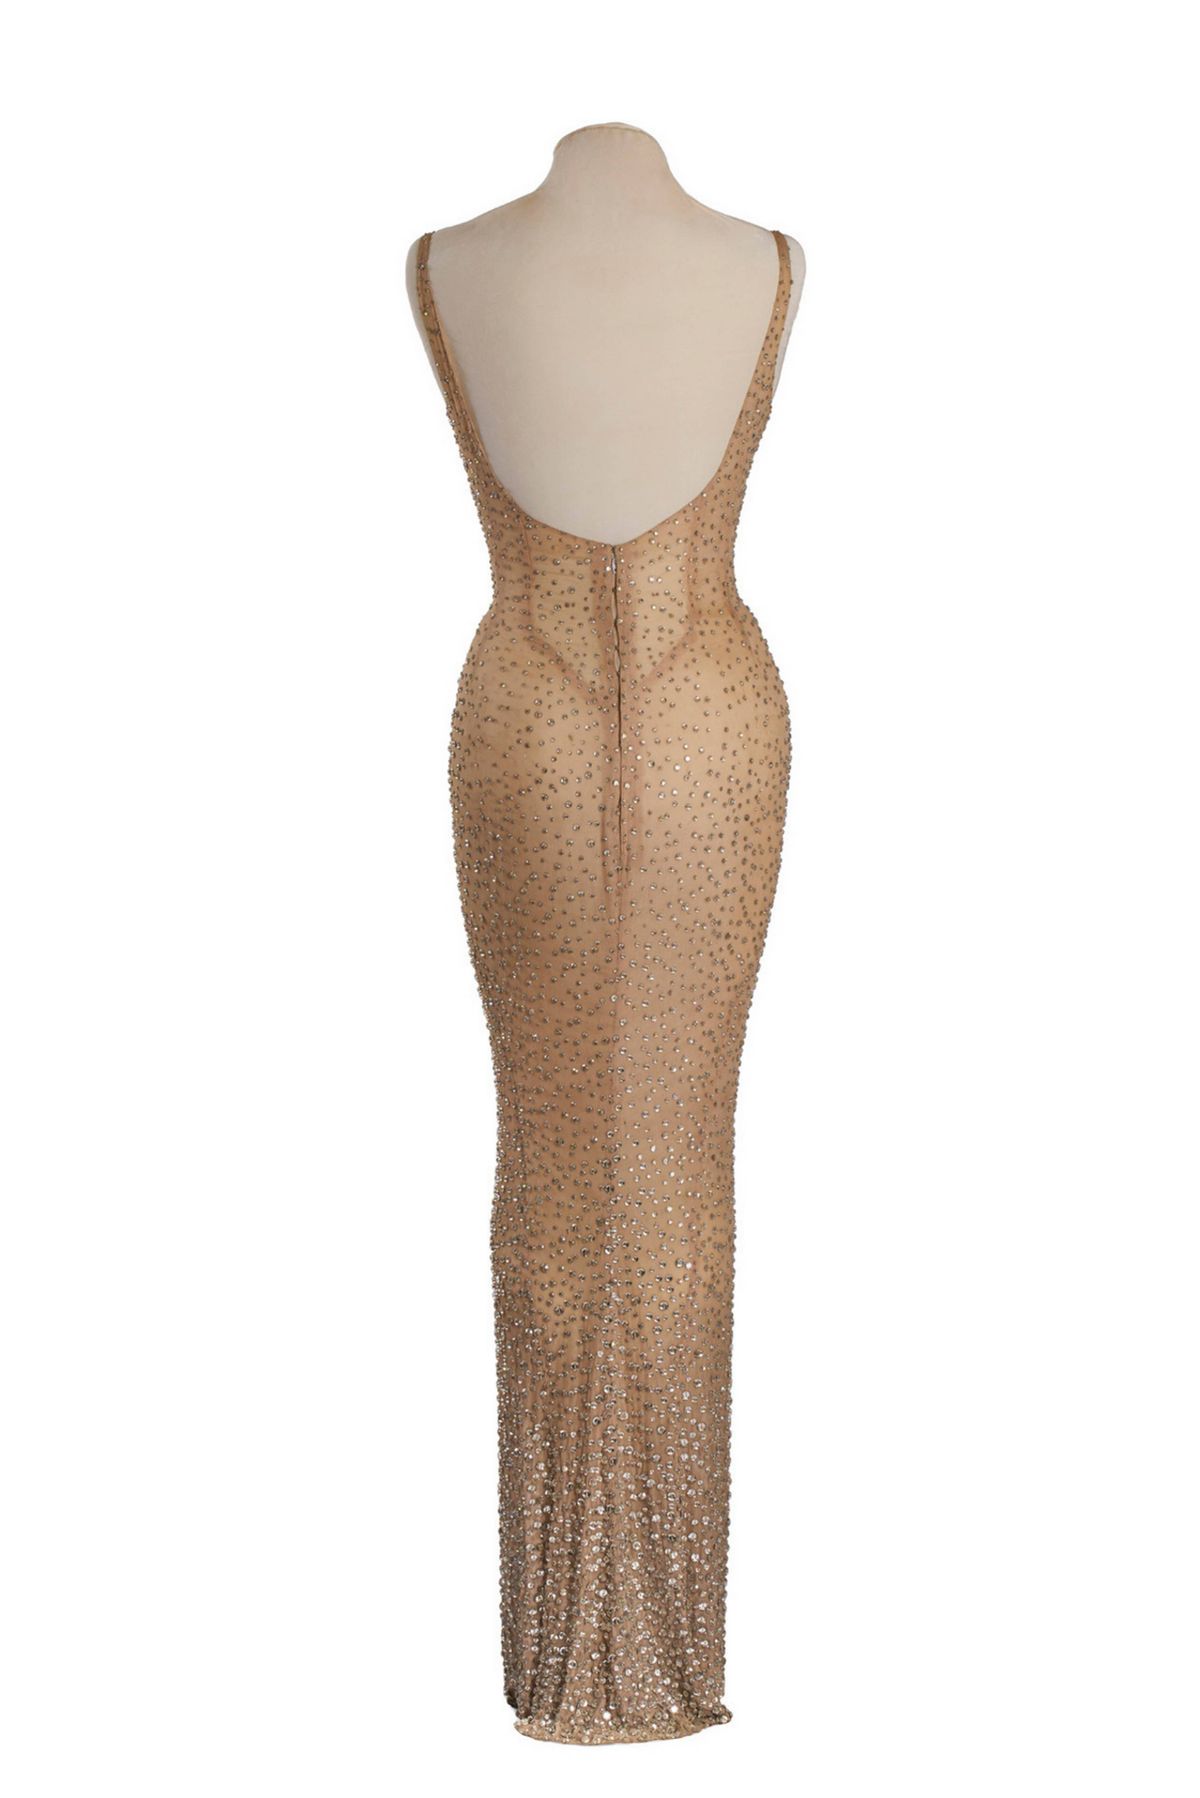 Trampe fordel arve Verdens dyreste stykke tøj: Marylin Monroes "birthday-kjole" er til salg